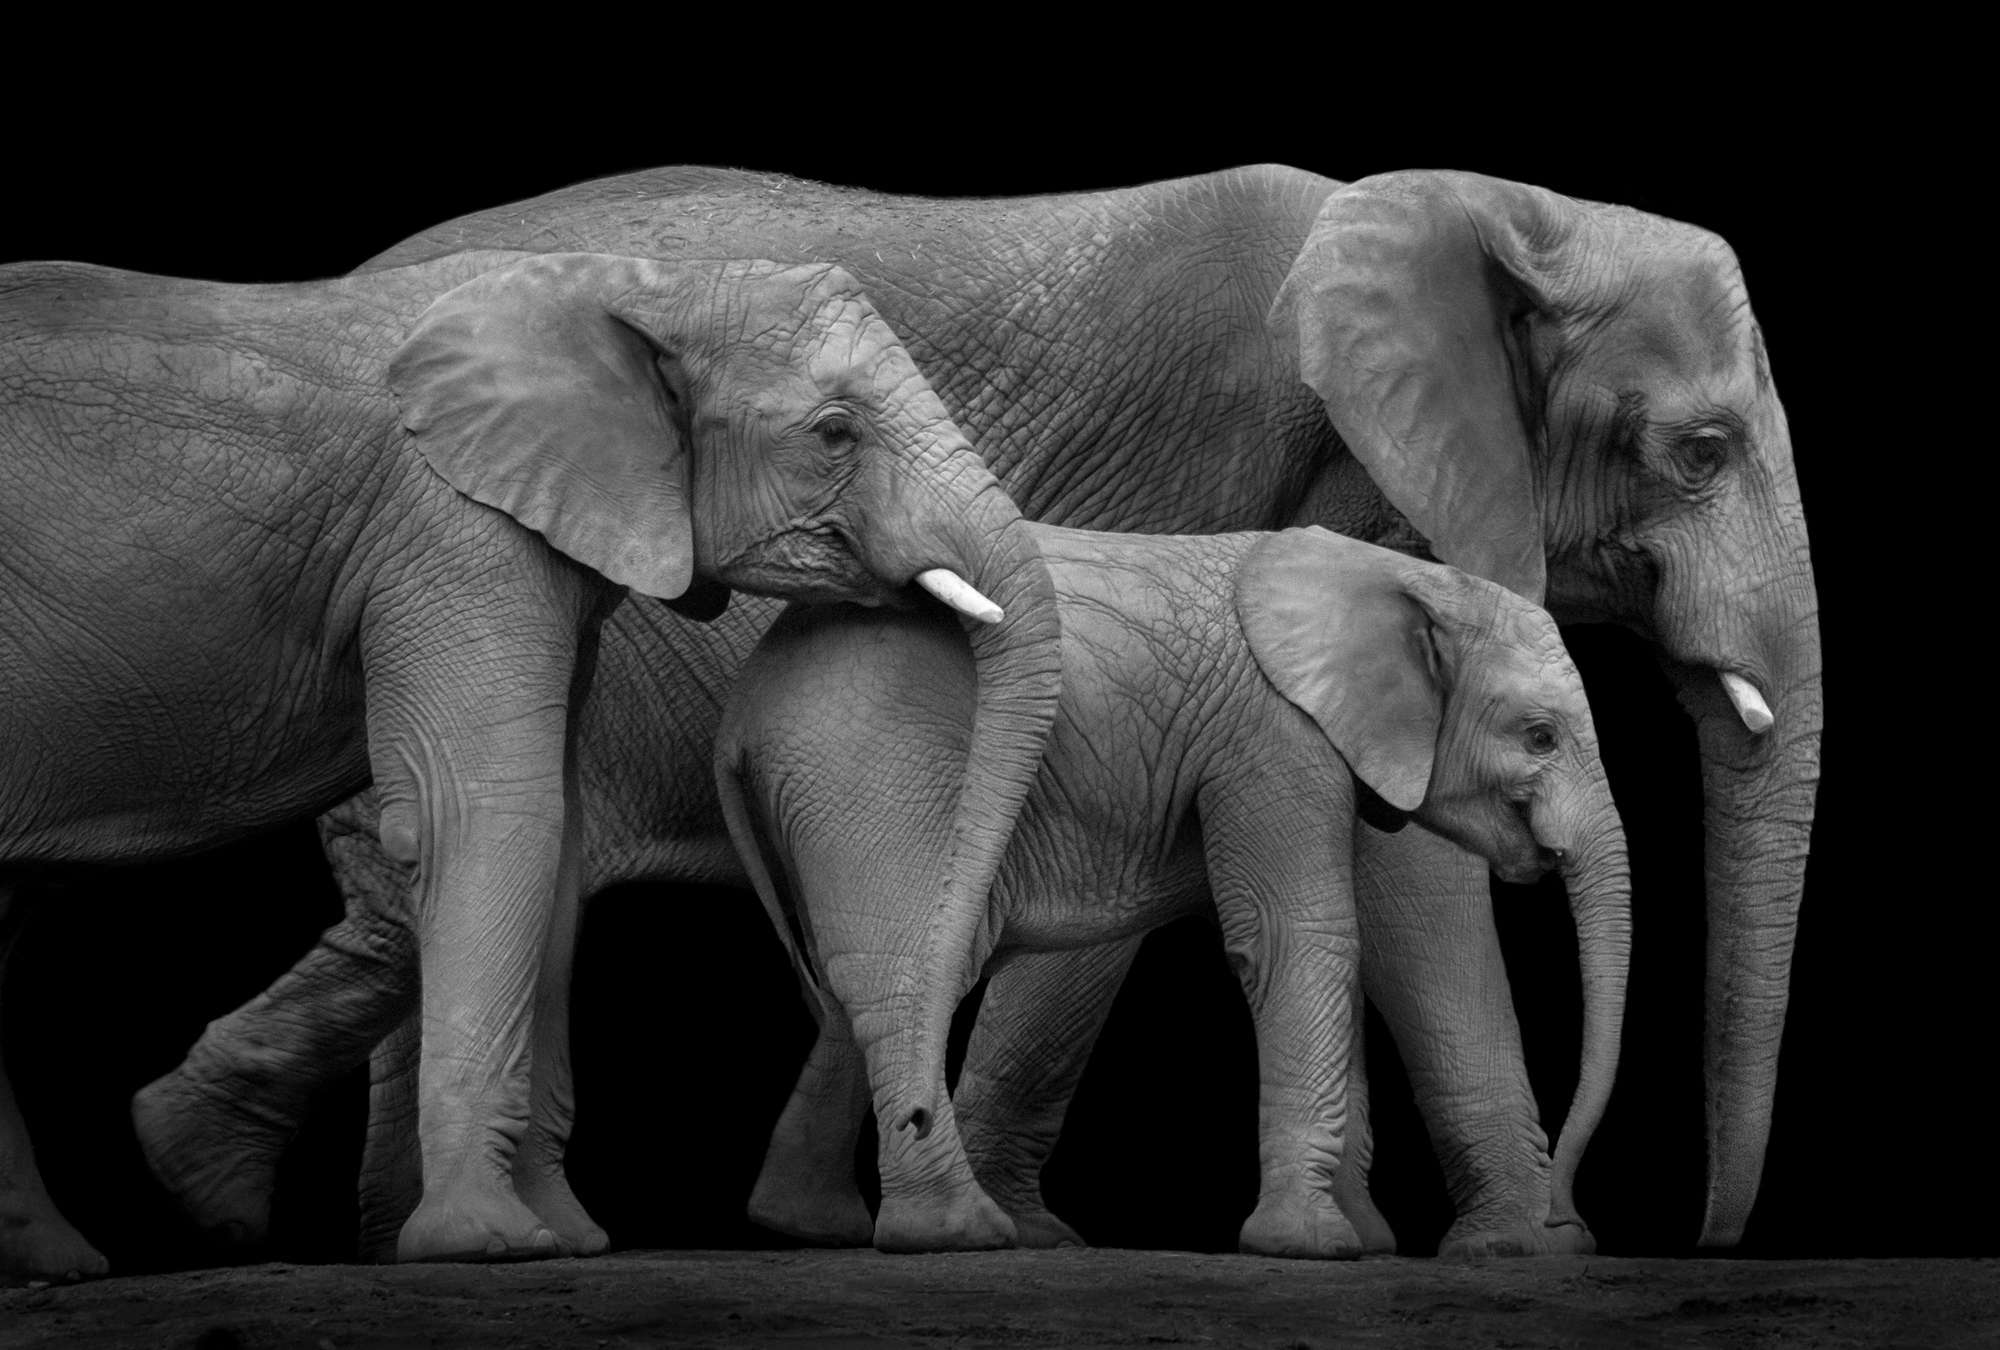             Fototapete Elefantenfamilie vor schwarzem Hintergrund
        